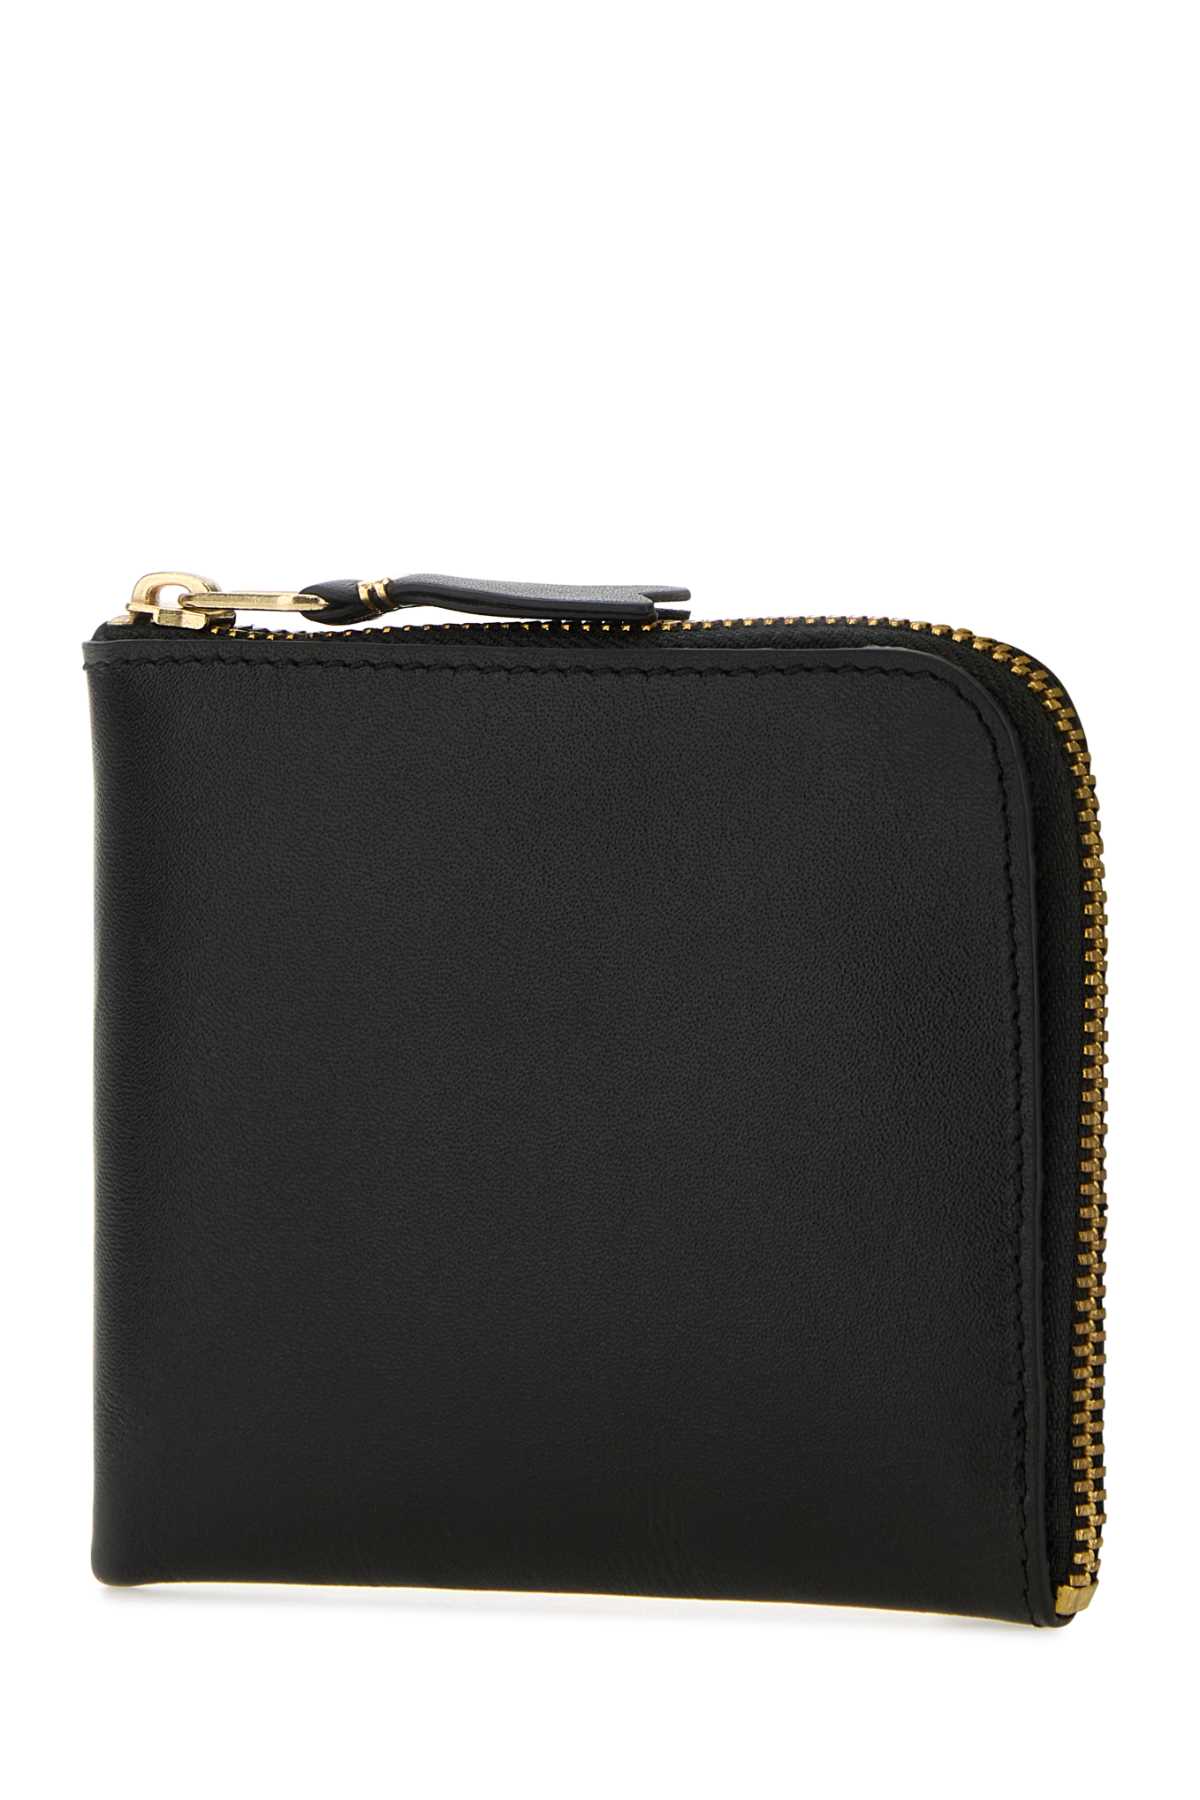 Shop Comme Des Garçons Black Leather Wallet